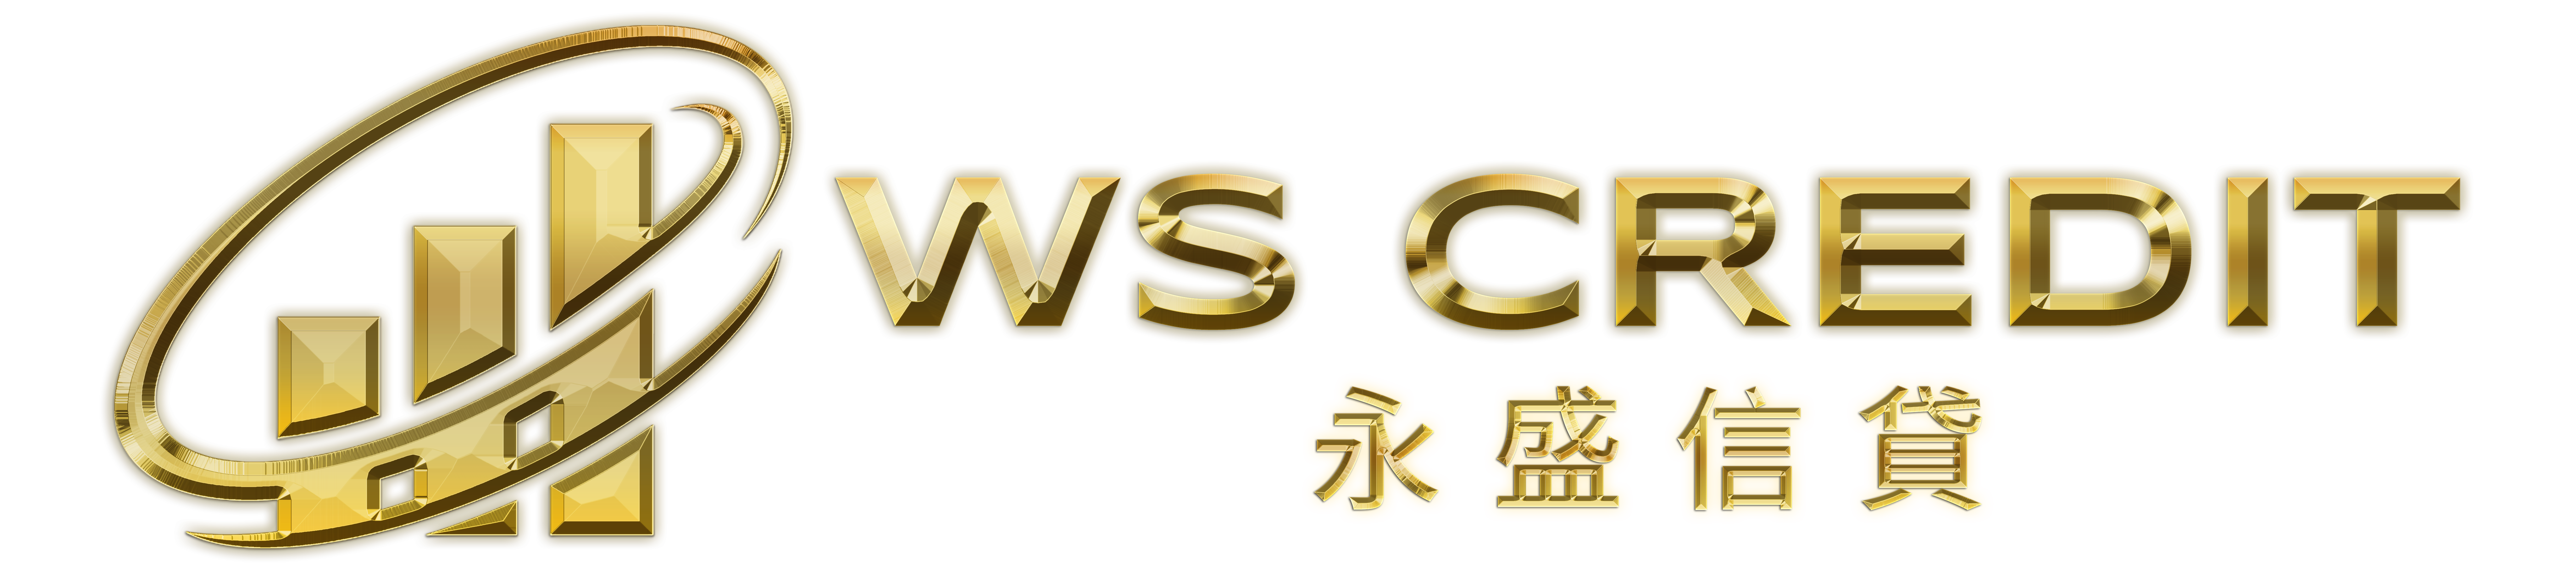 ws-logo-golden